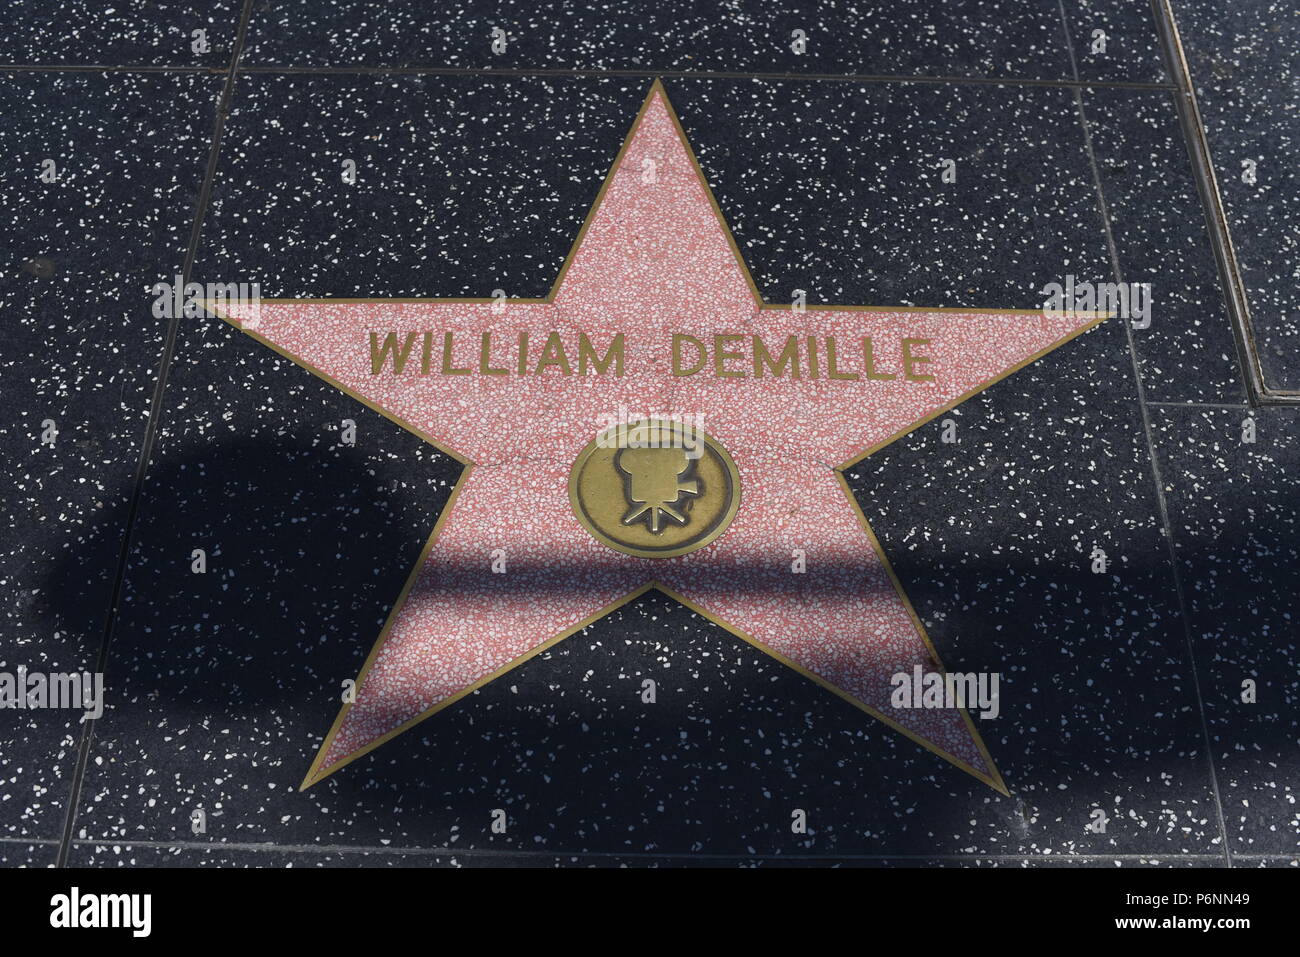 HOLLYWOOD, CA - 29 giugno: William Demille stella sulla Hollywood Walk of Fame in Hollywood, la California il 29 giugno 2018. Foto Stock